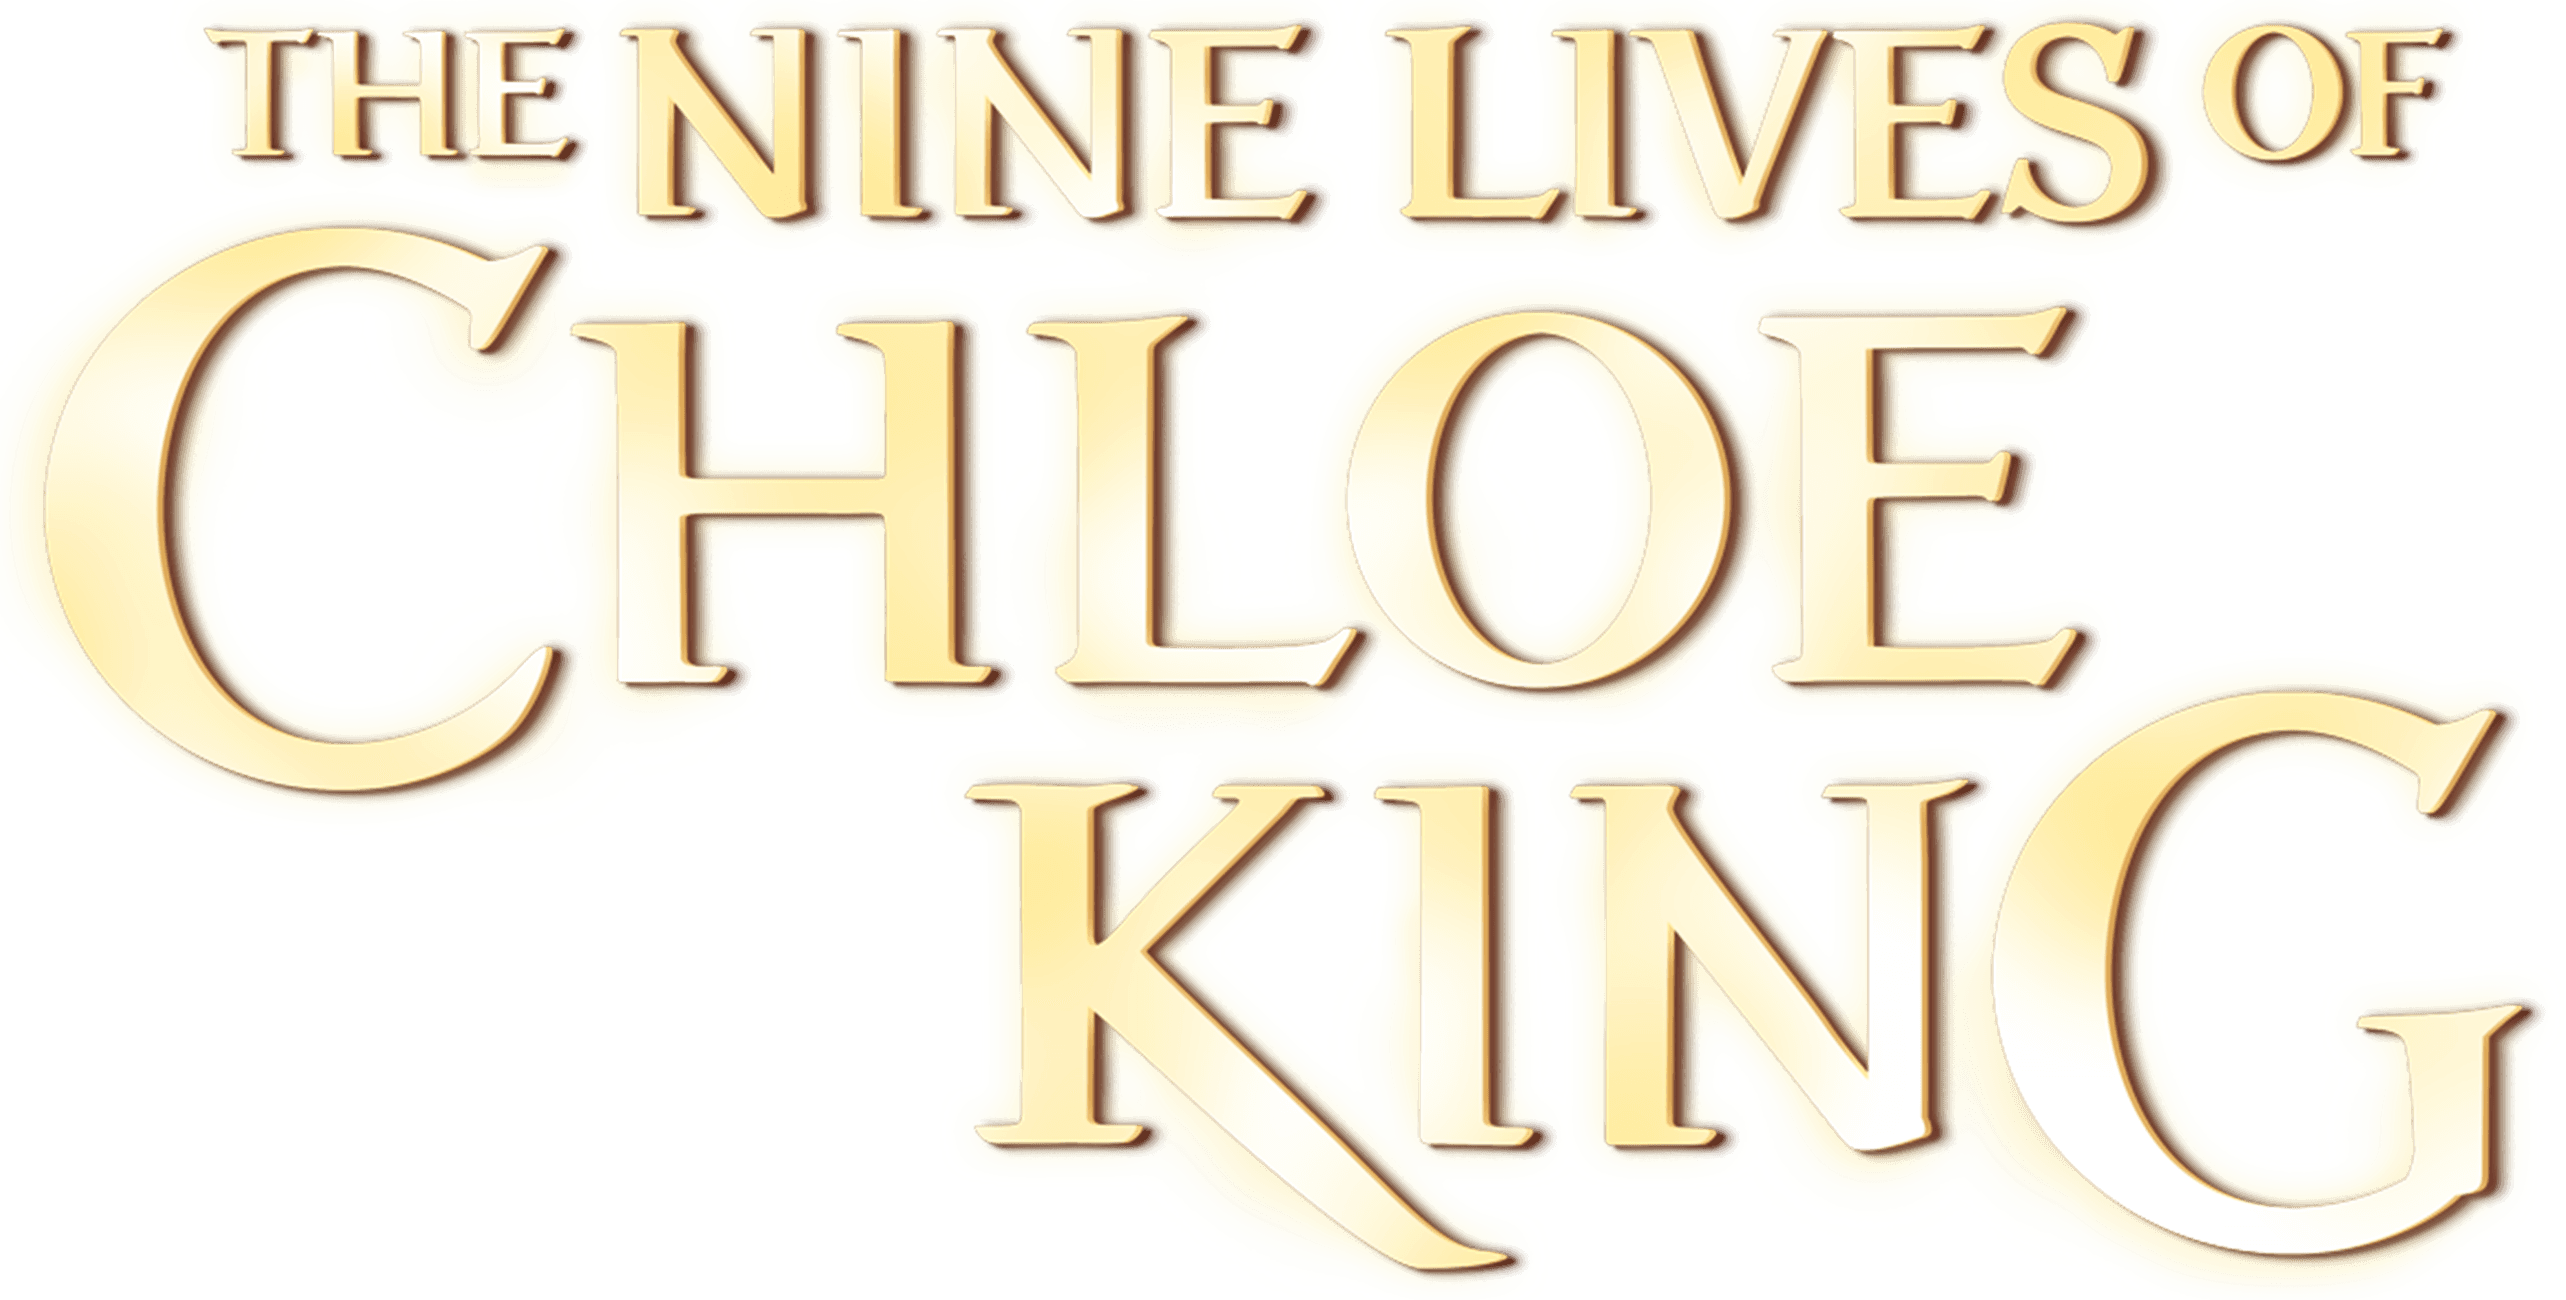 The Nine Lives of Chloe King logo